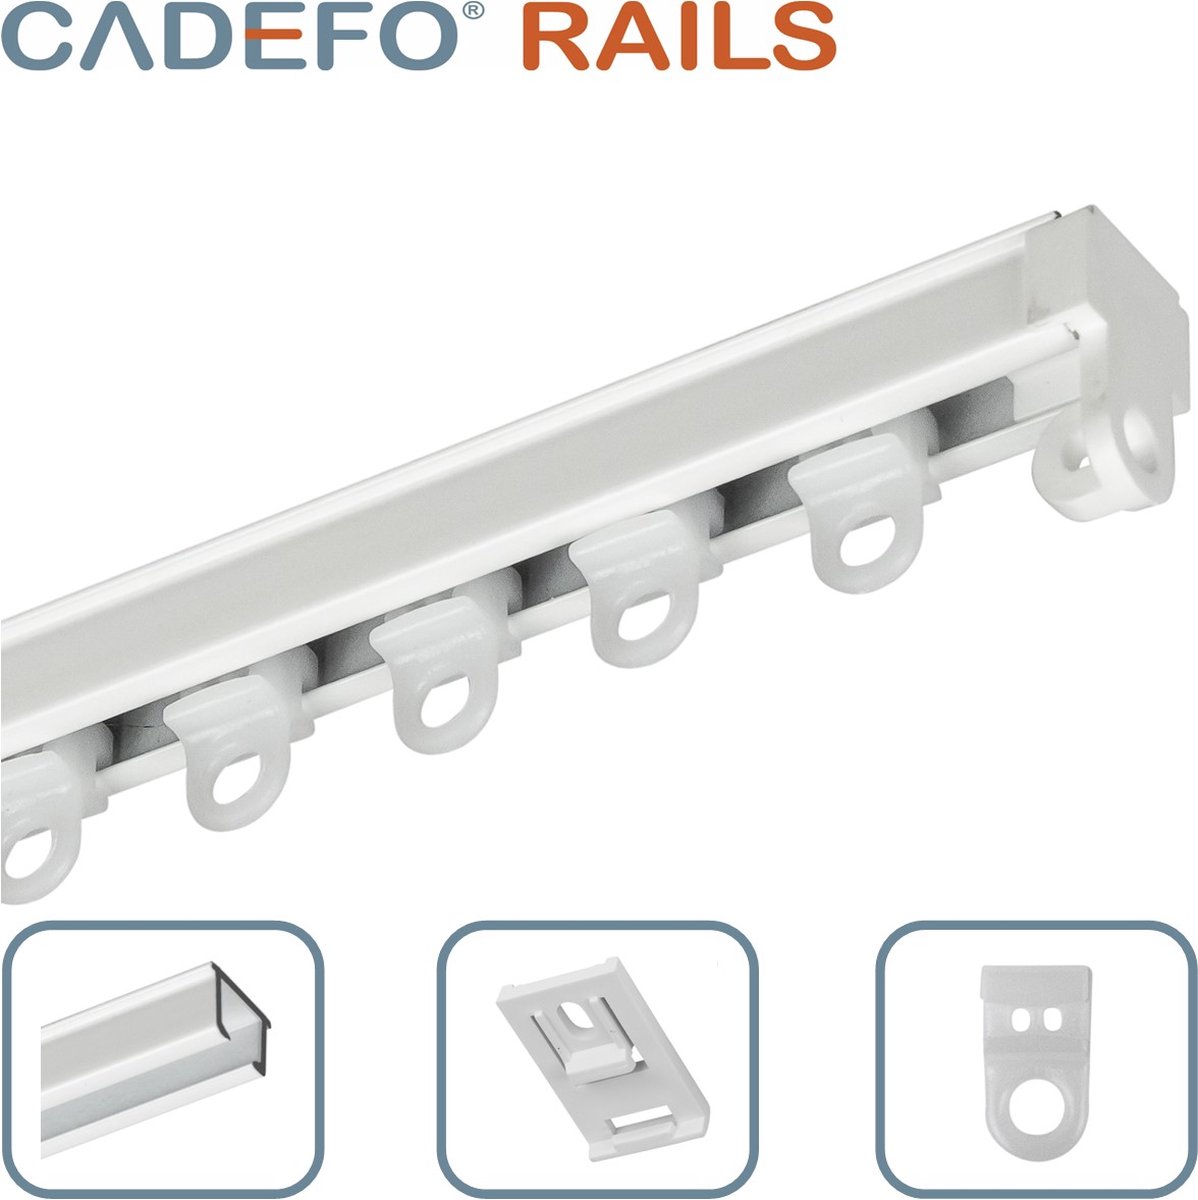 CADEFO RAILS (401 - 450 cm) Gordijnrails - Compleet op maat! - UIT 1 STUK - Leverbaar tot 6 meter - Plafondbevestiging - Lengte 437 cm